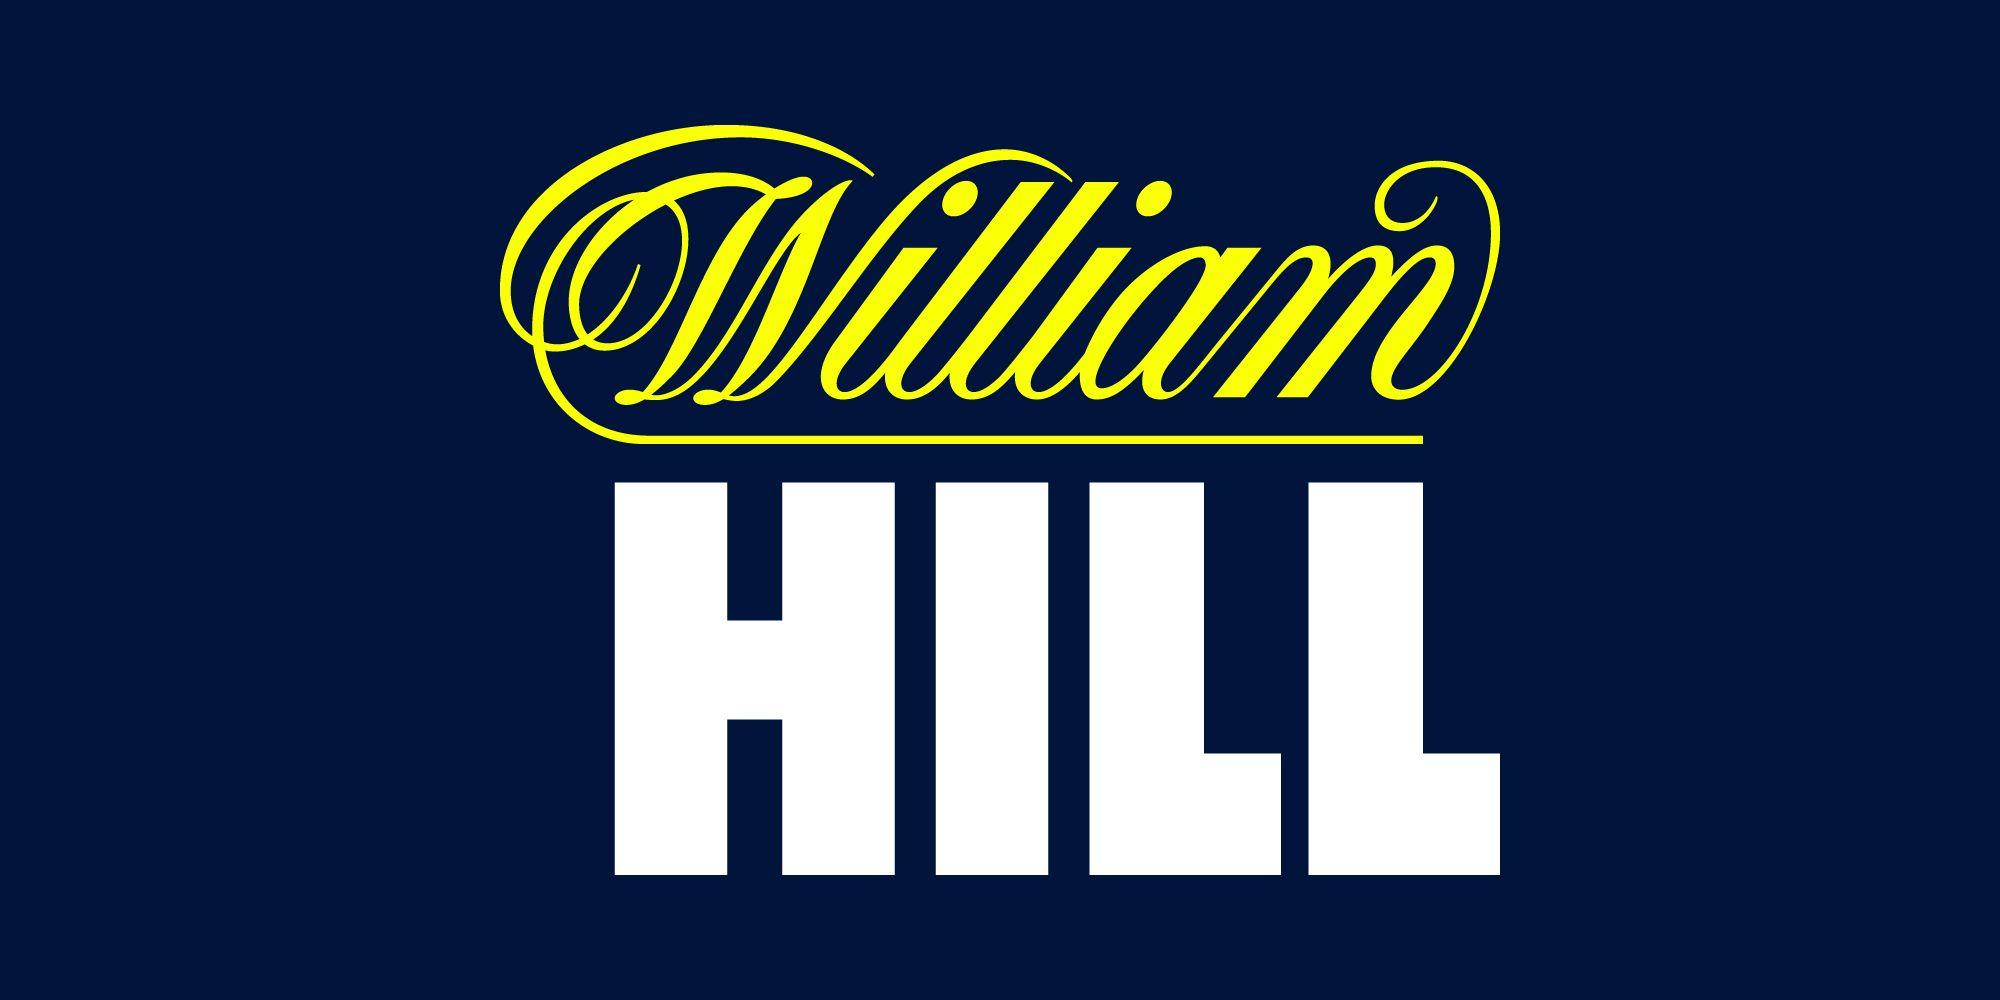 William Logo - William Hill Plc: Image library